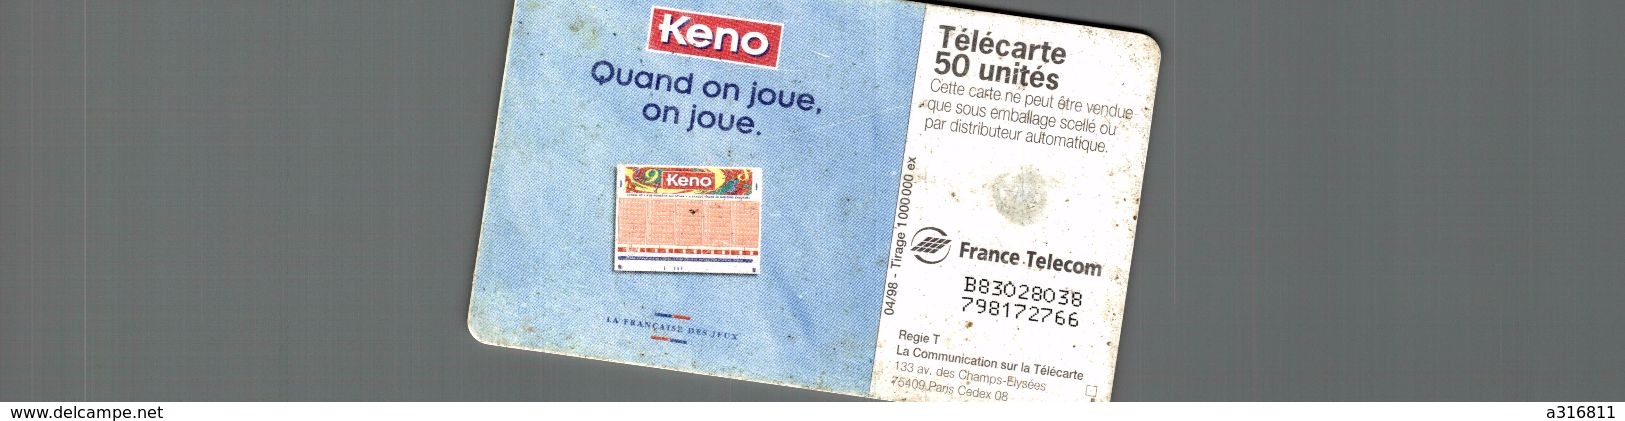 KENO - Telefoonkaarten Voor Particulieren